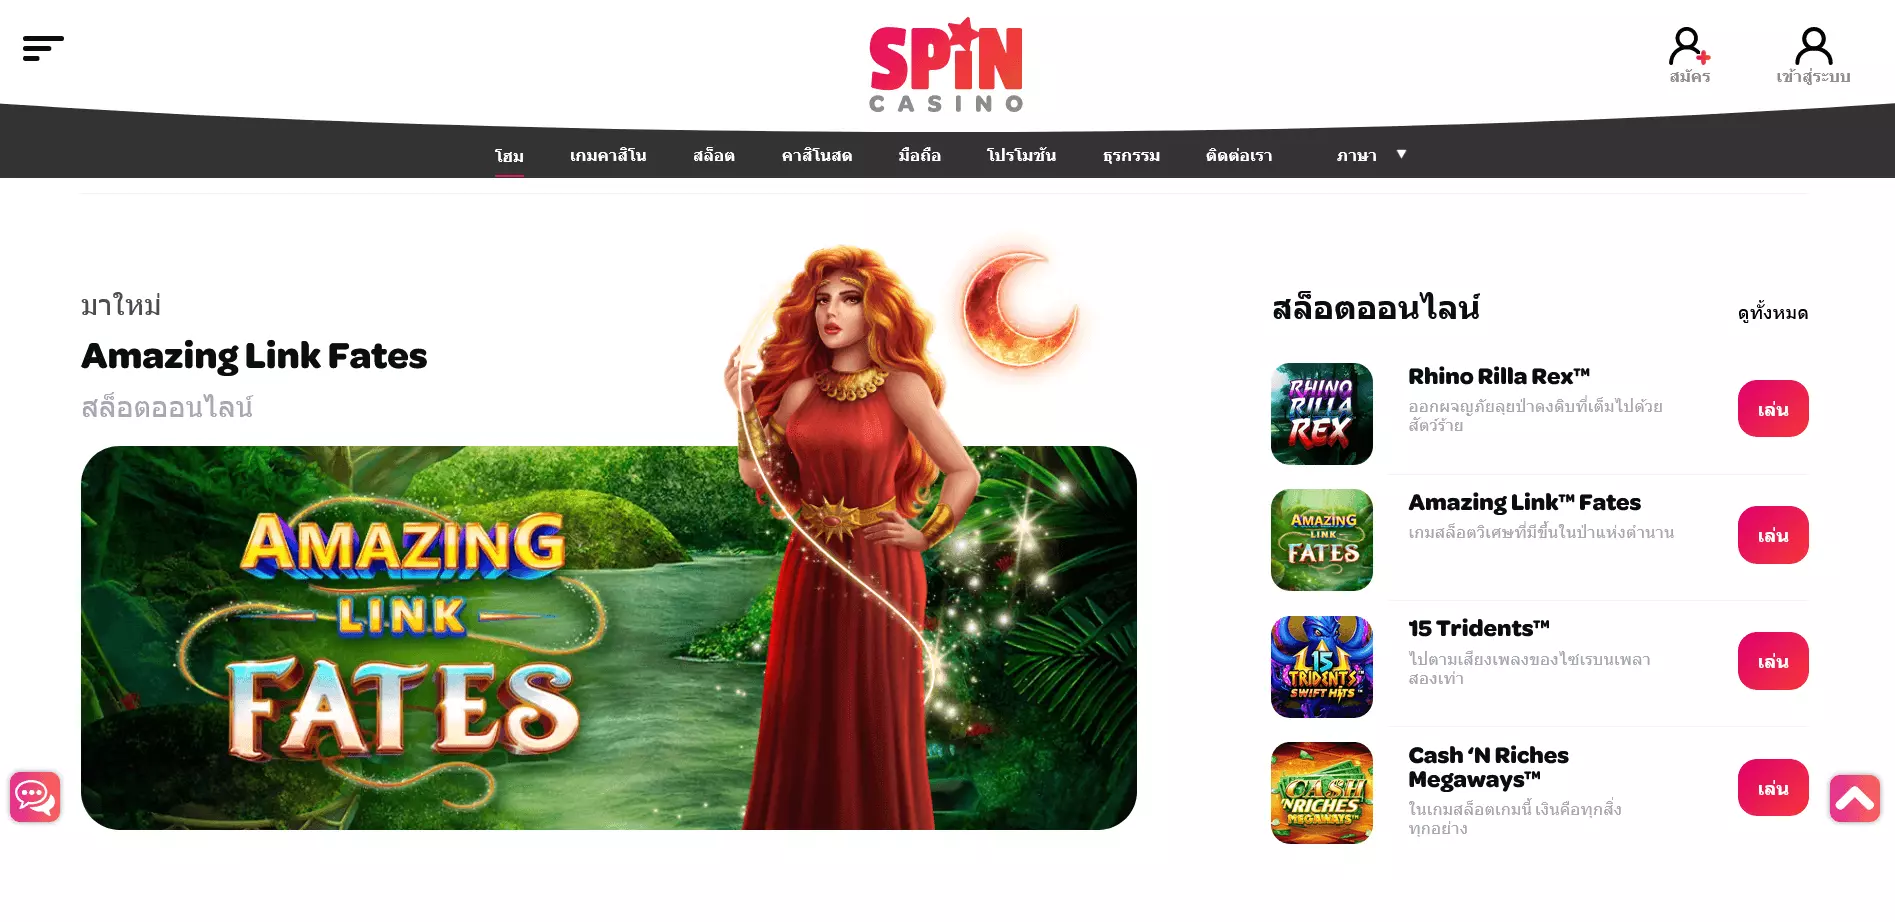 สถานะของคาสิโน Spin Casino ในประเทศไทย